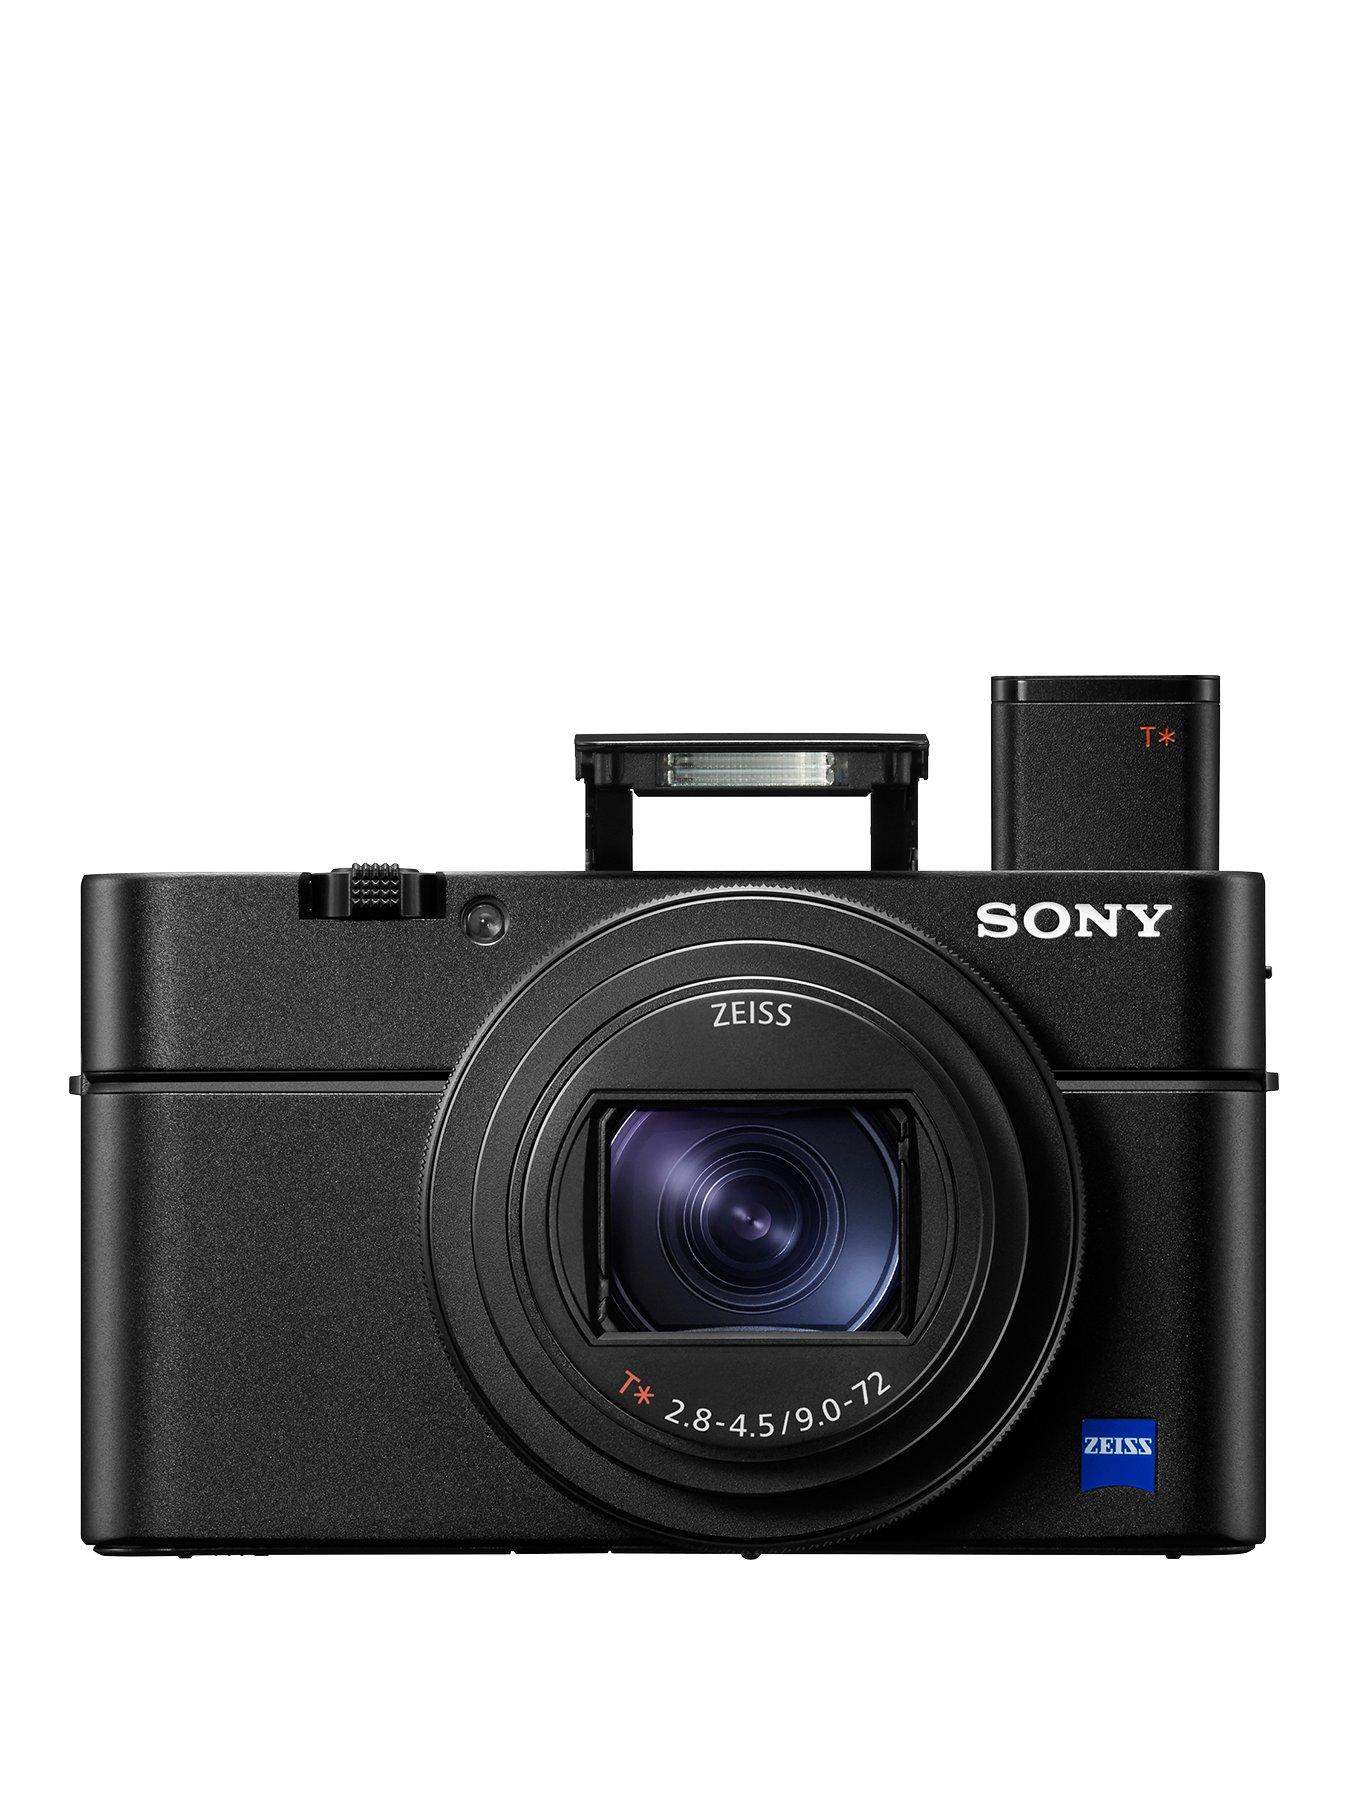 Sony Dsc-Rx100 Vi Cyber-Shot Digital Camera – Broad Zoom Range And Super-Fast Af – Black